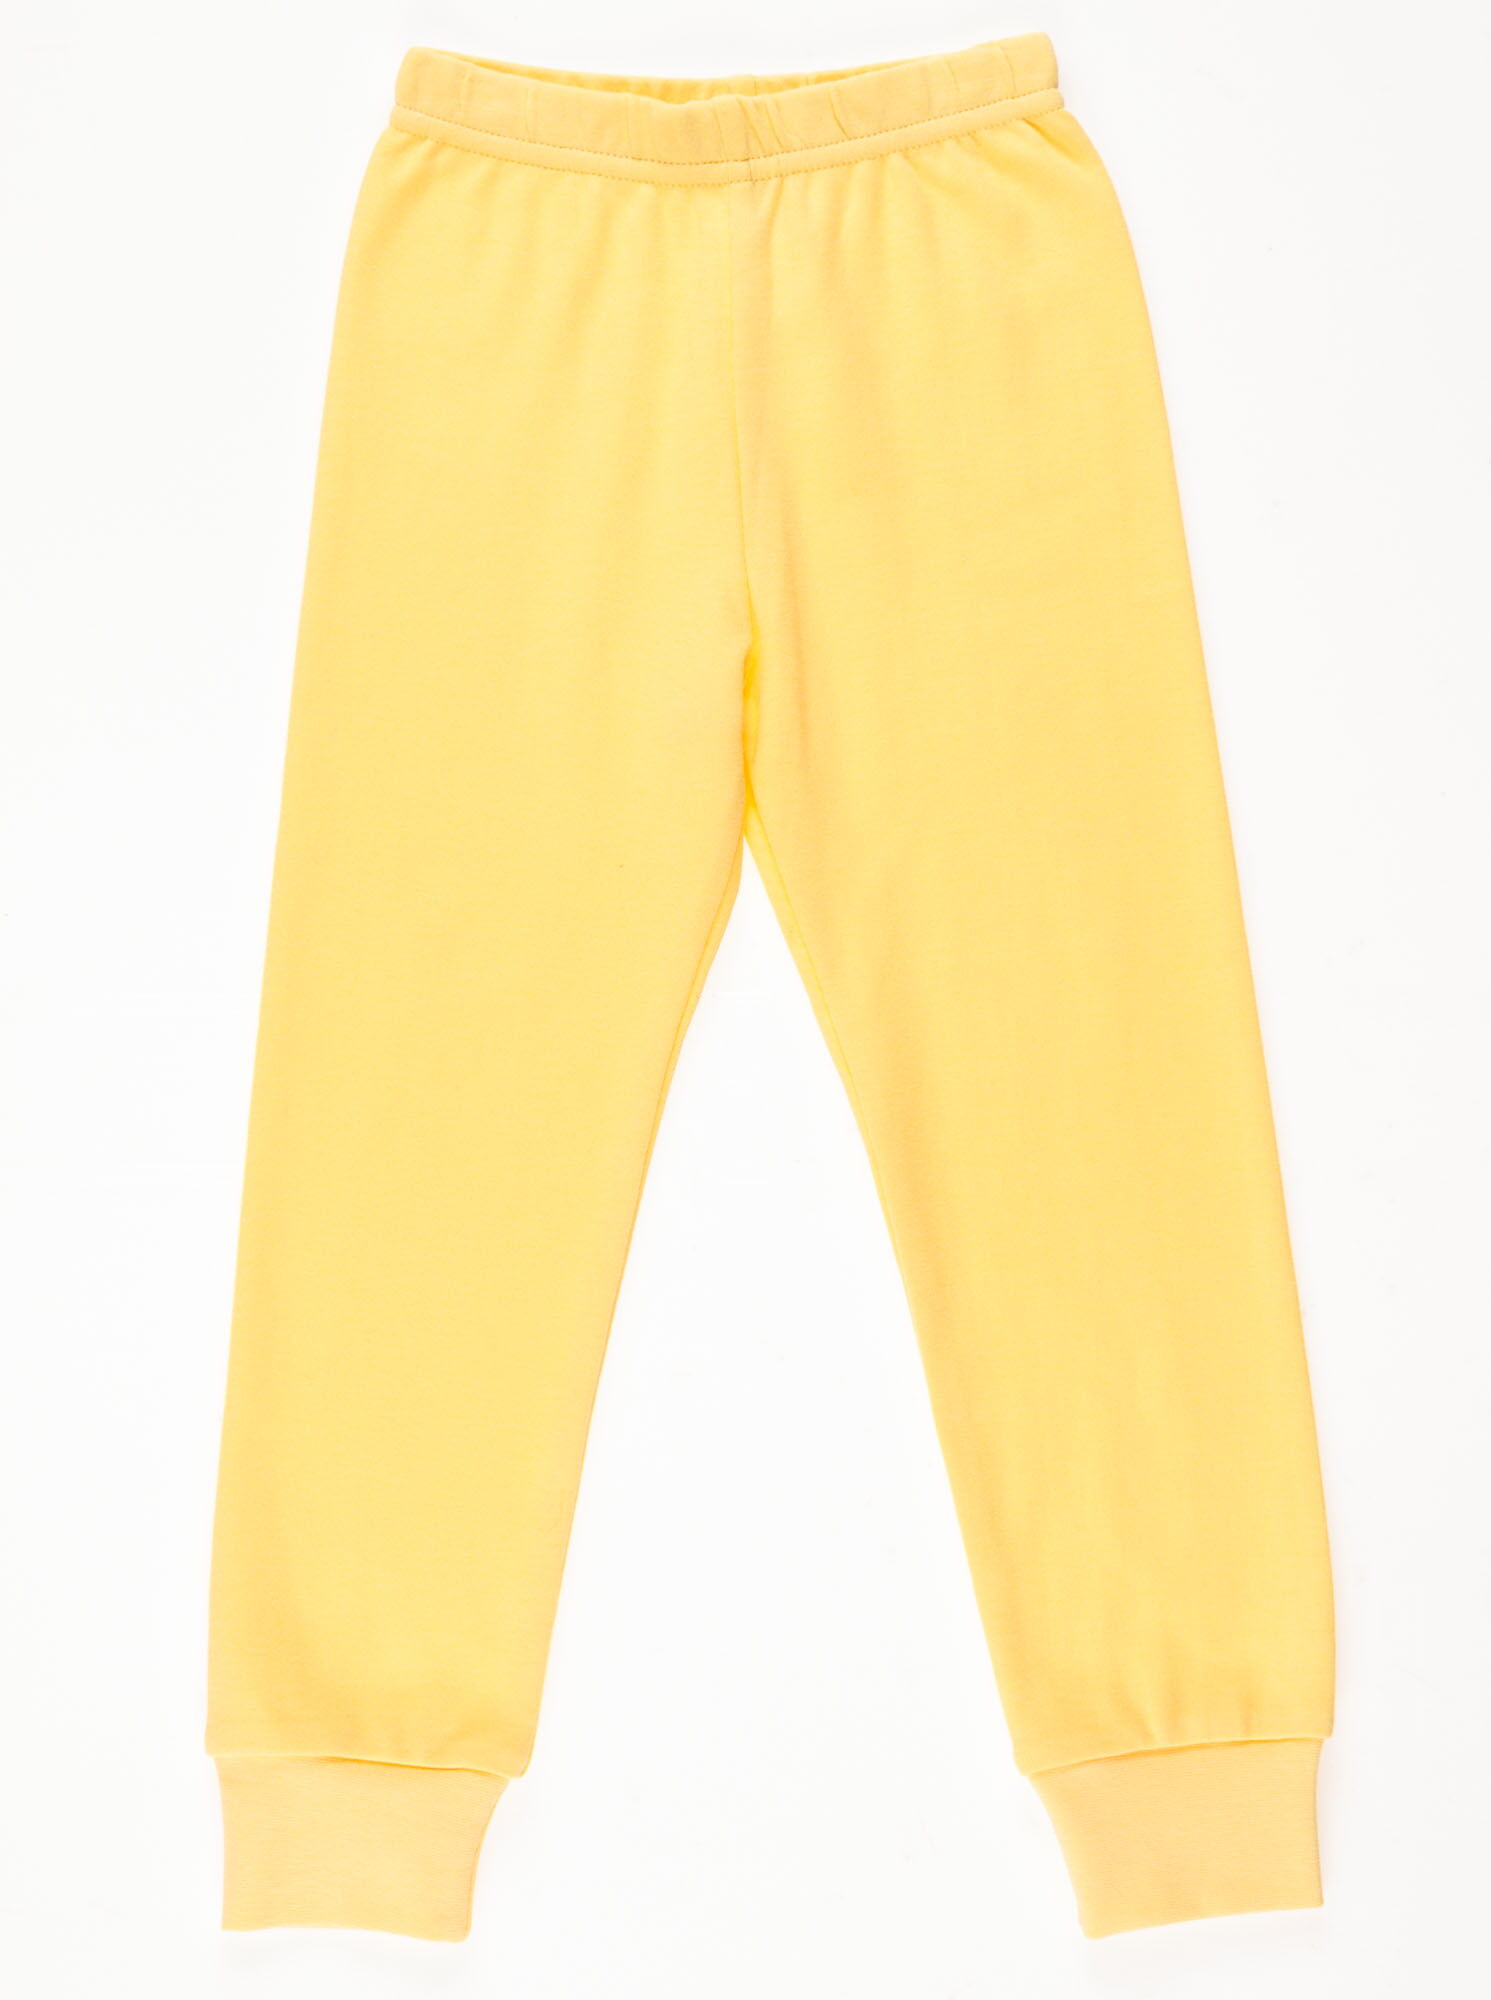 Пижама для девочки Interkids Макароны желтый 1094 - размеры